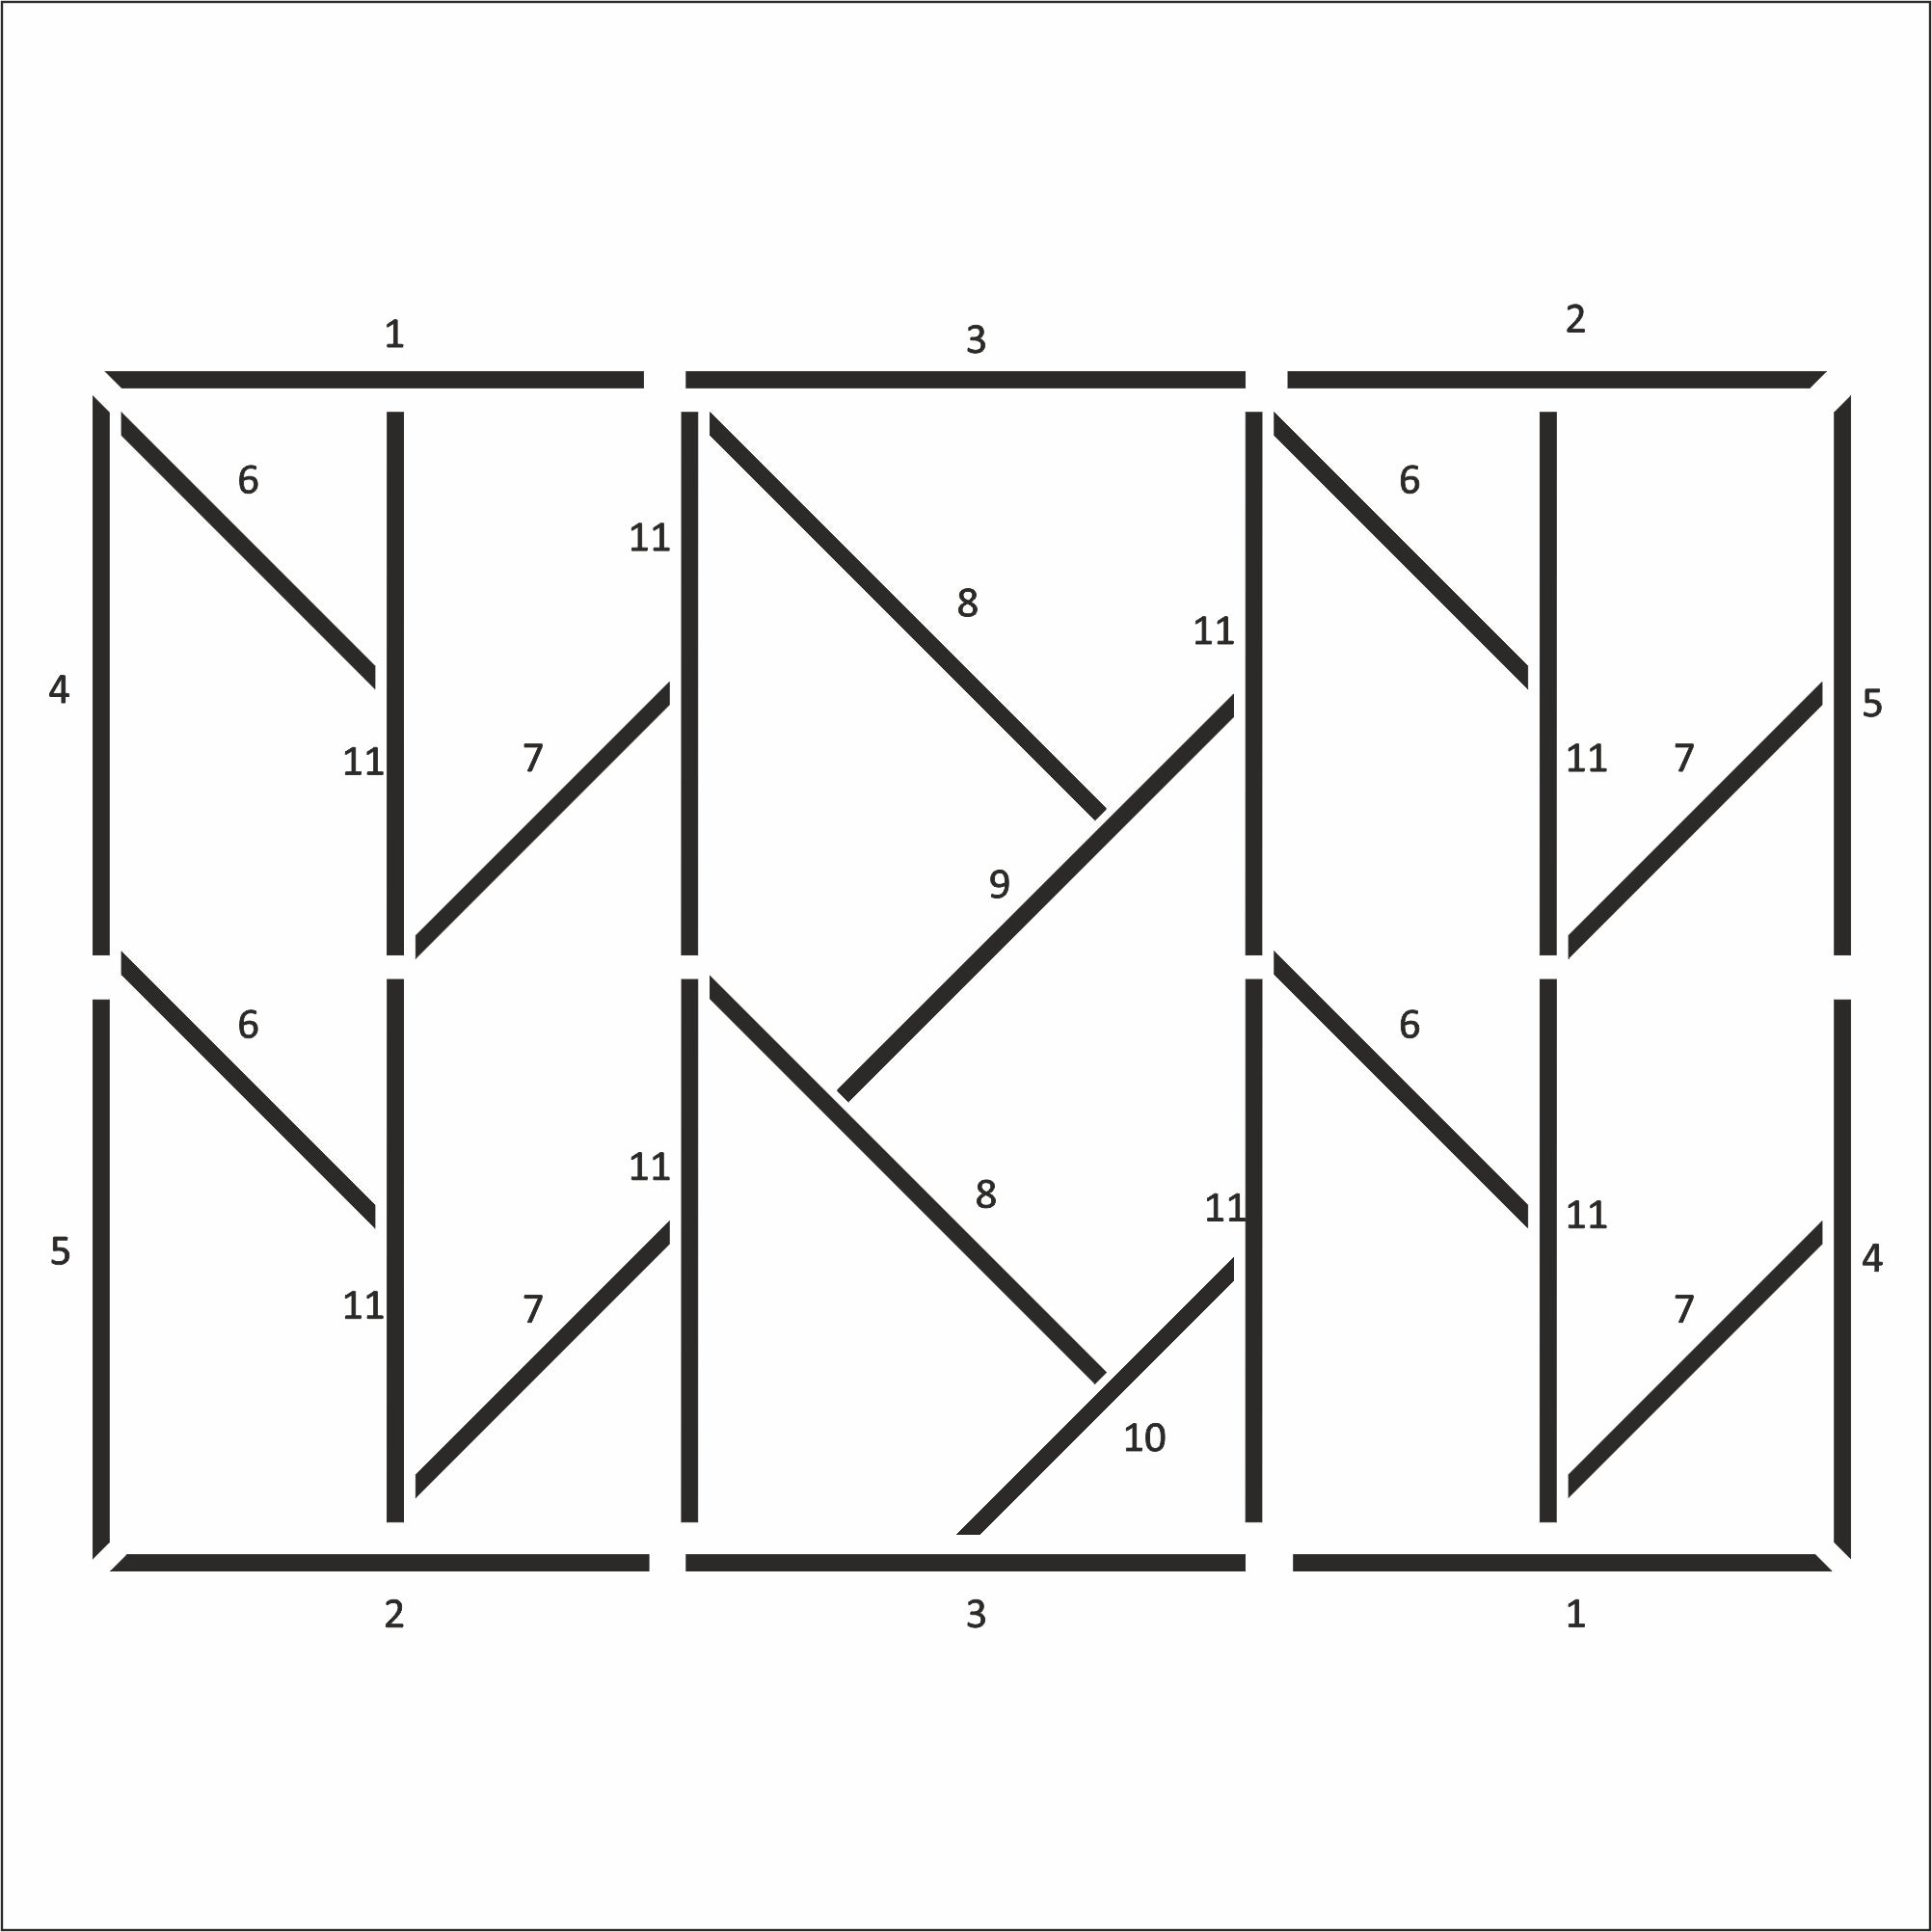 Kit modanatura asimmetrica per pareti - Installazione semplice per zone giorno (P15)